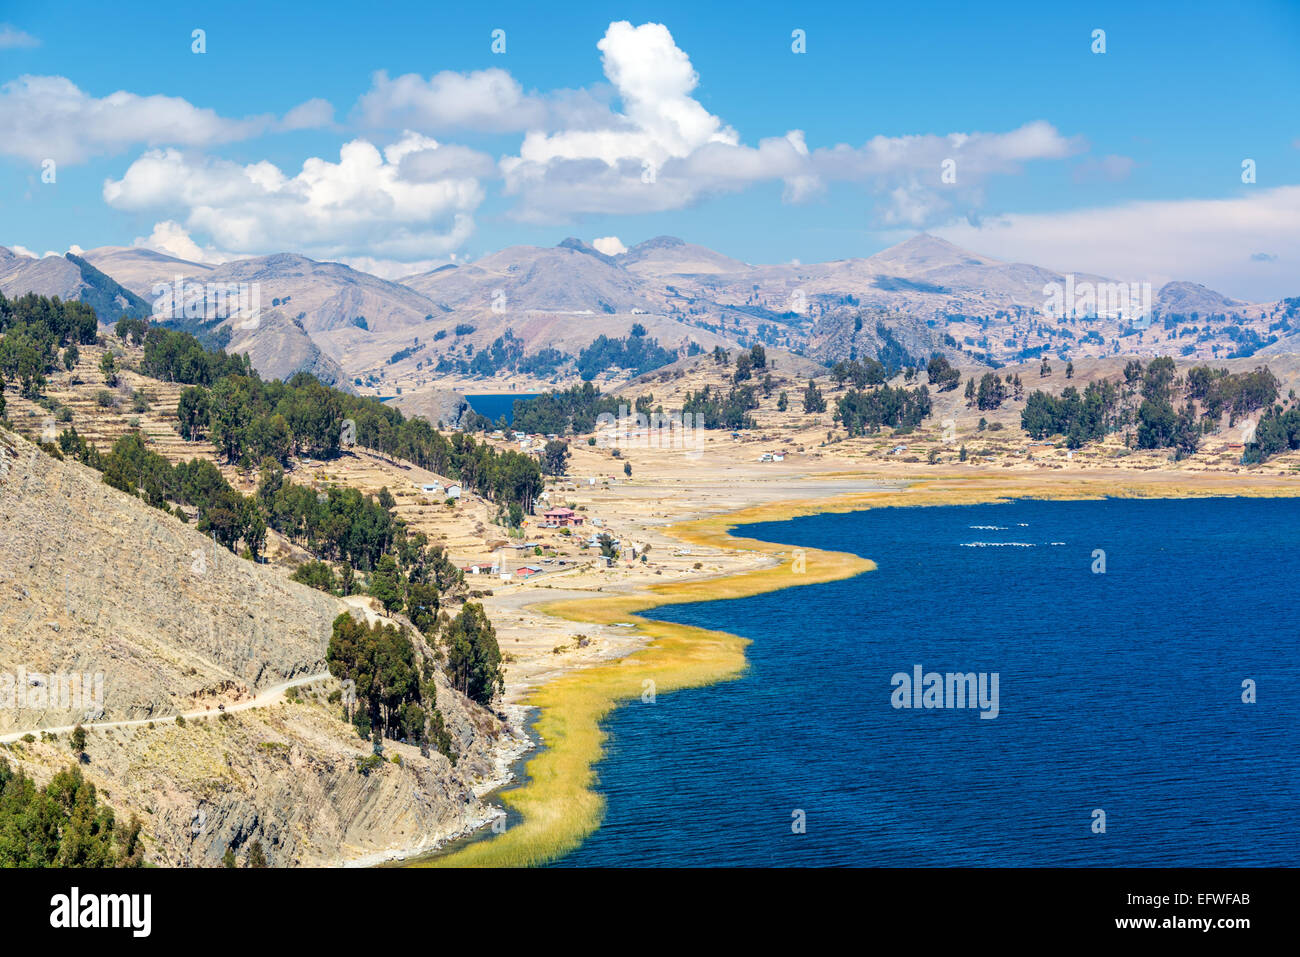 Drammatica vista del magnifico paesaggio del lago Titicaca vicino a Copacabana, Bolivia Foto Stock